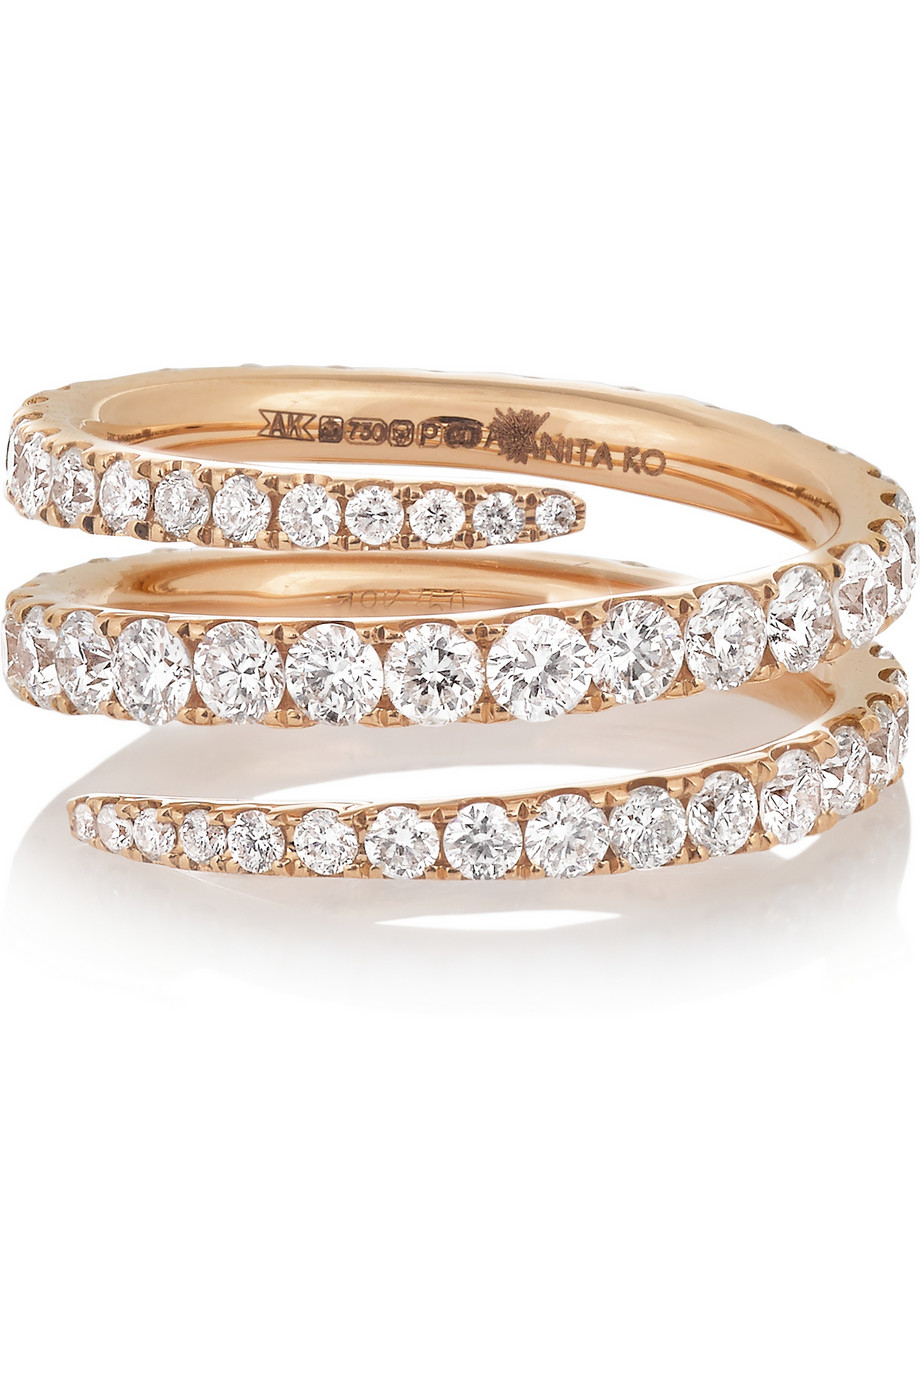 Anita ko 18kt White Gold Cougar Ring With Diamonds 